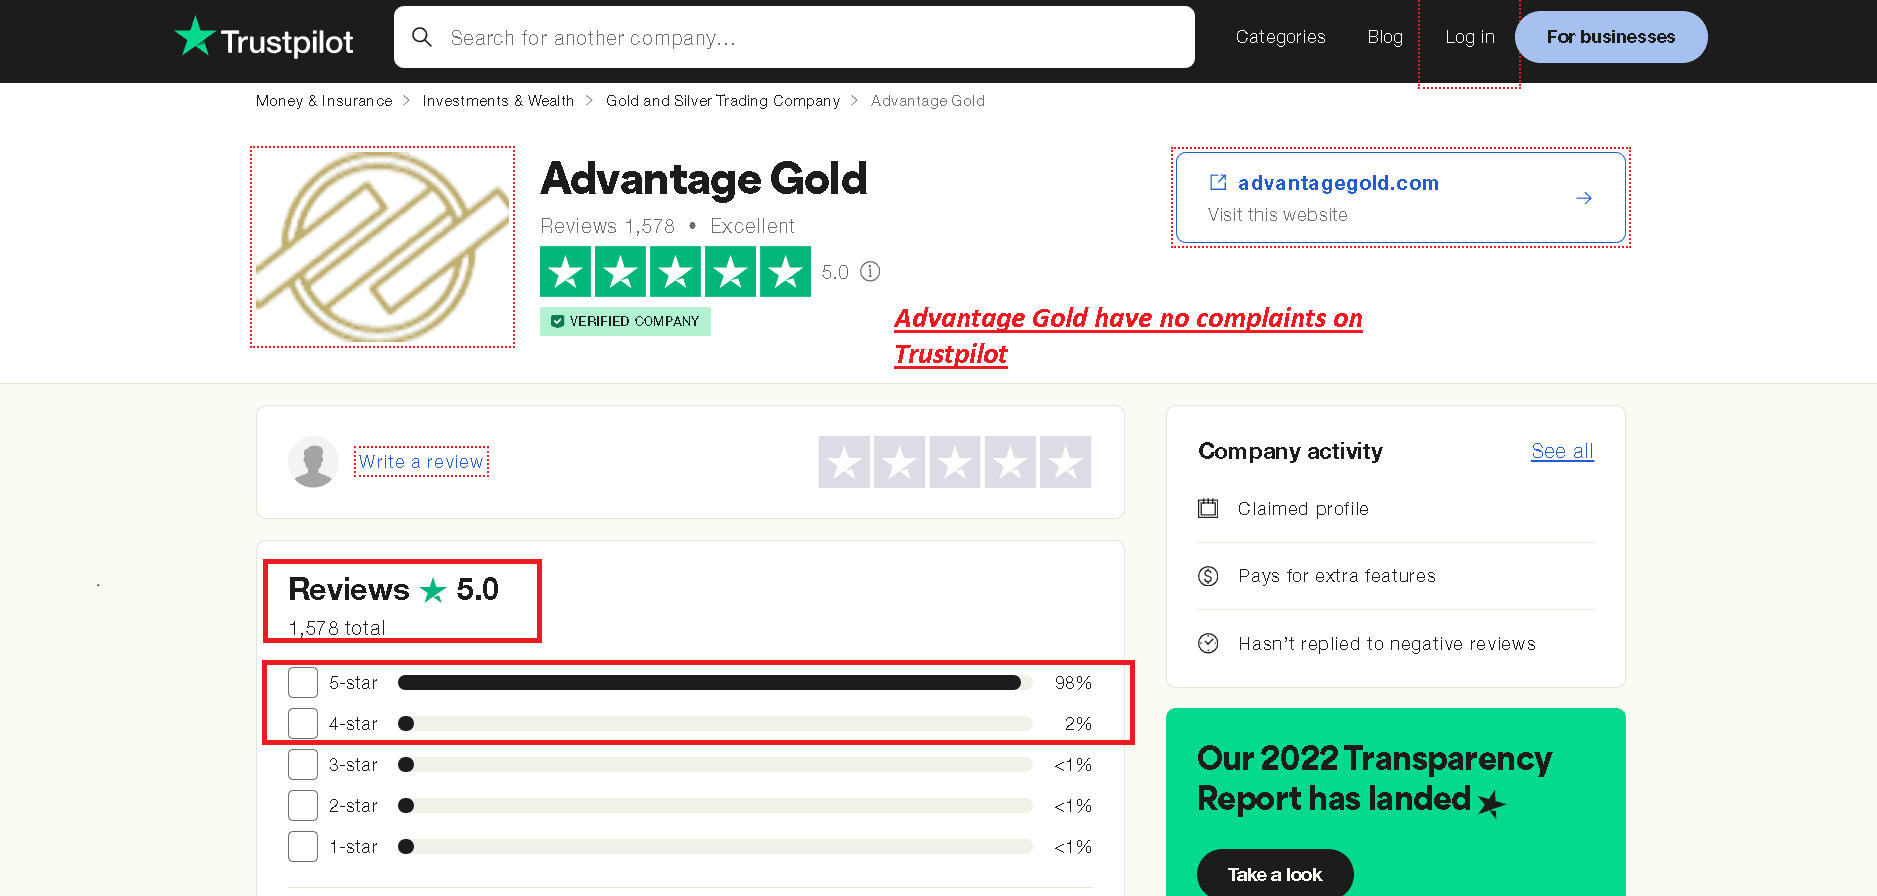 Advantage Gold has no complaints and negative reviews on Trustpilot